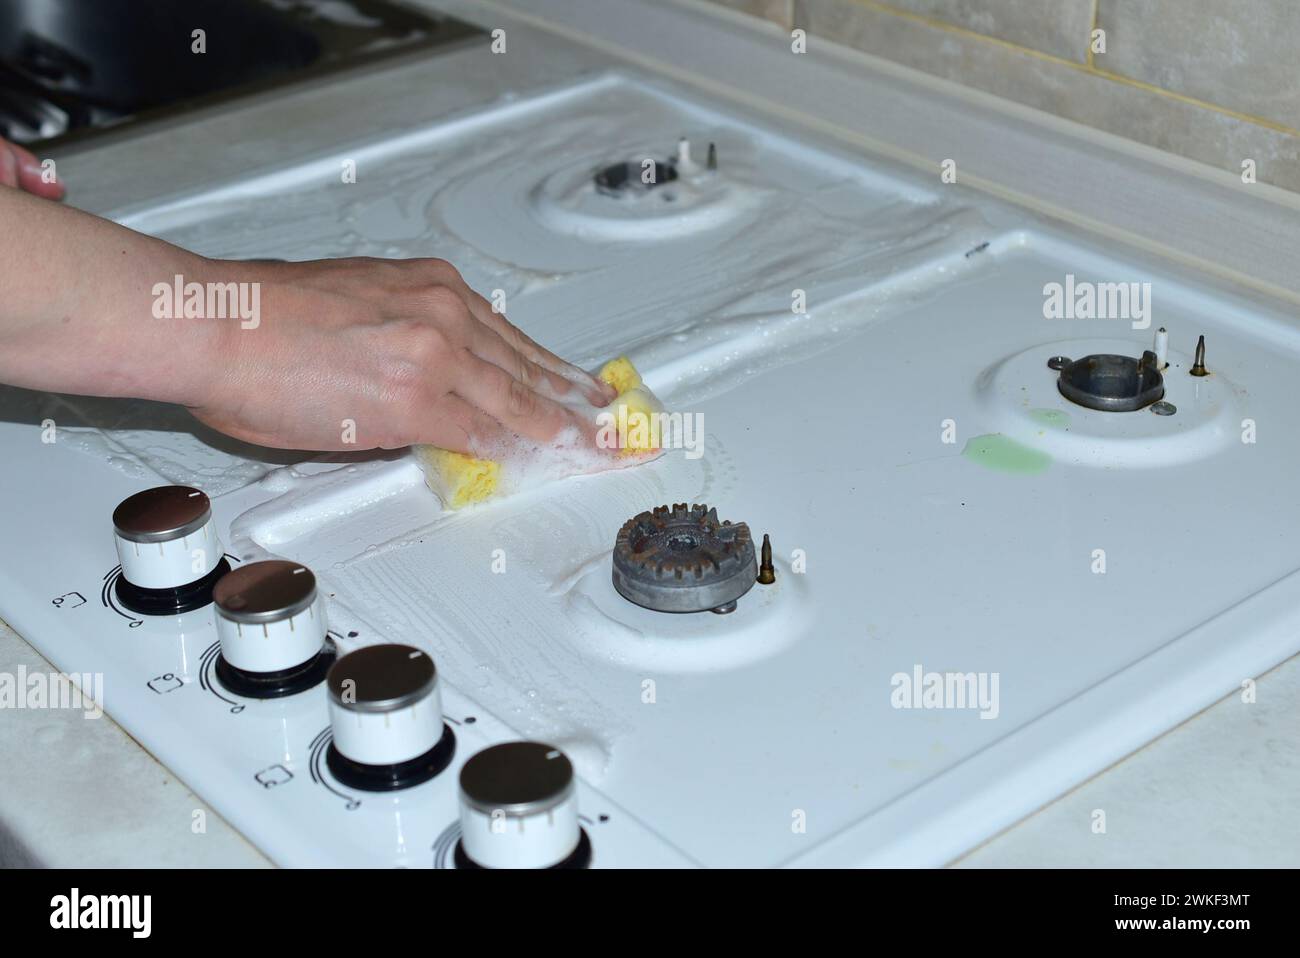 Une femme lave la surface supérieure d'une cuisinière à gaz avec une éponge et des détergents. Banque D'Images